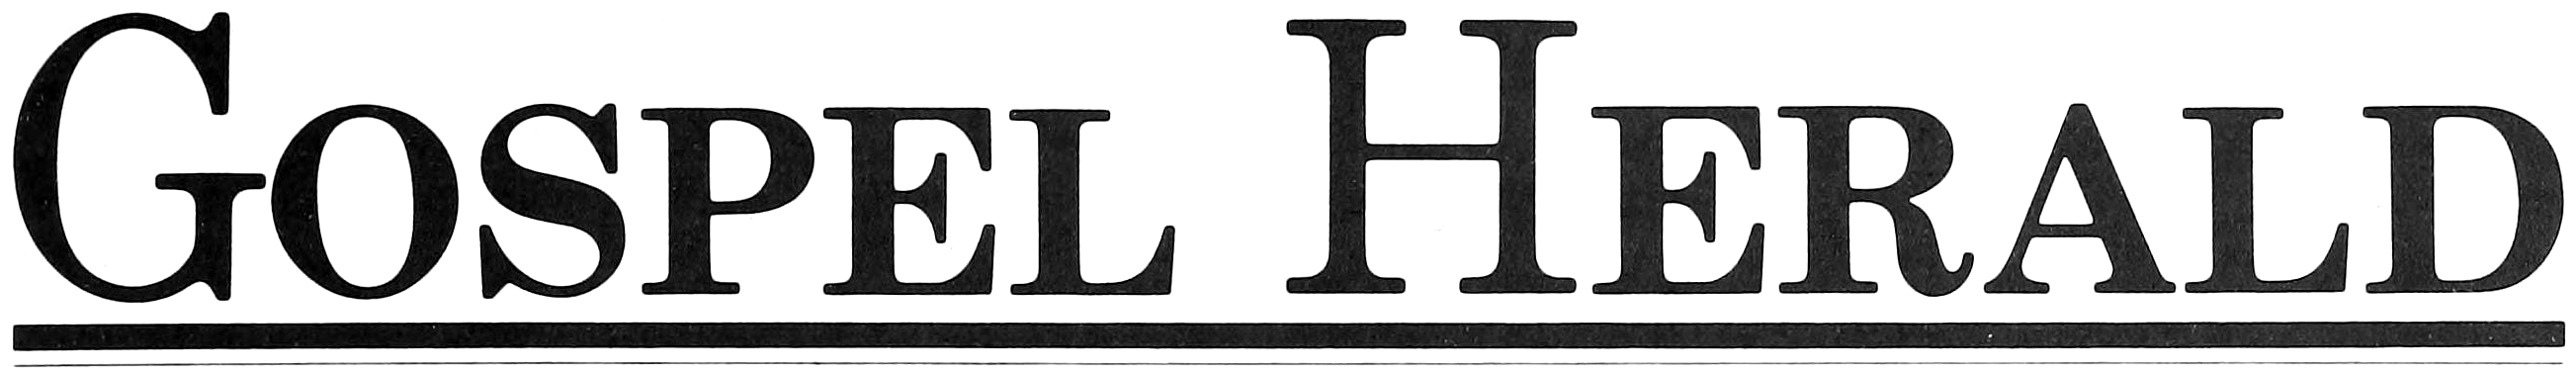 “Gospel Herald” logo, circa 1983